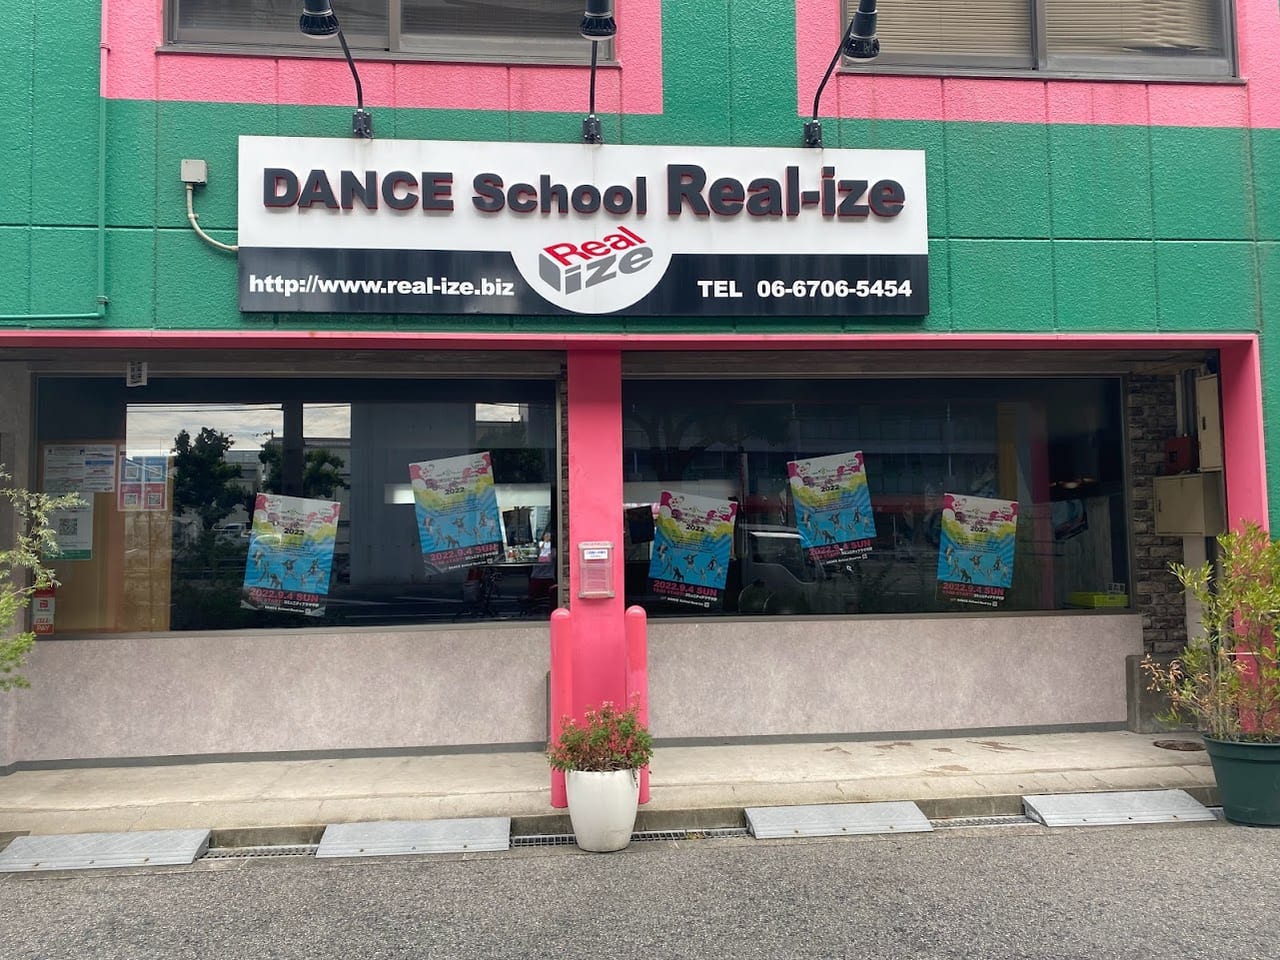 DANCEschoolREAllize外観